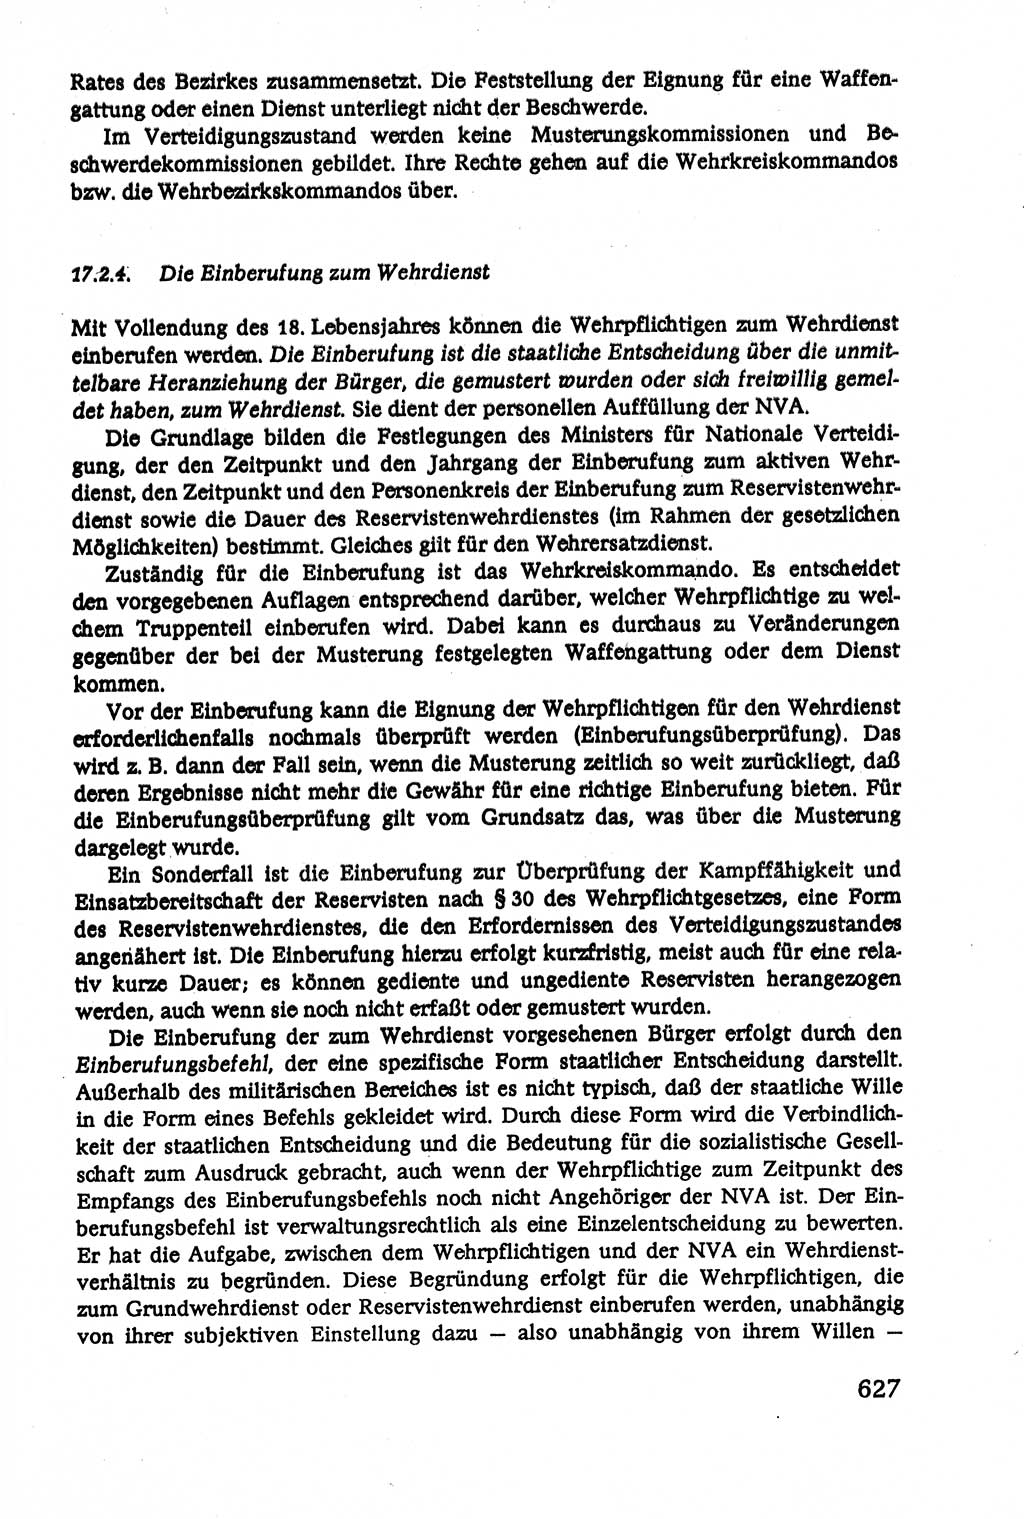 Verwaltungsrecht [Deutsche Demokratische Republik (DDR)], Lehrbuch 1979, Seite 627 (Verw.-R. DDR Lb. 1979, S. 627)